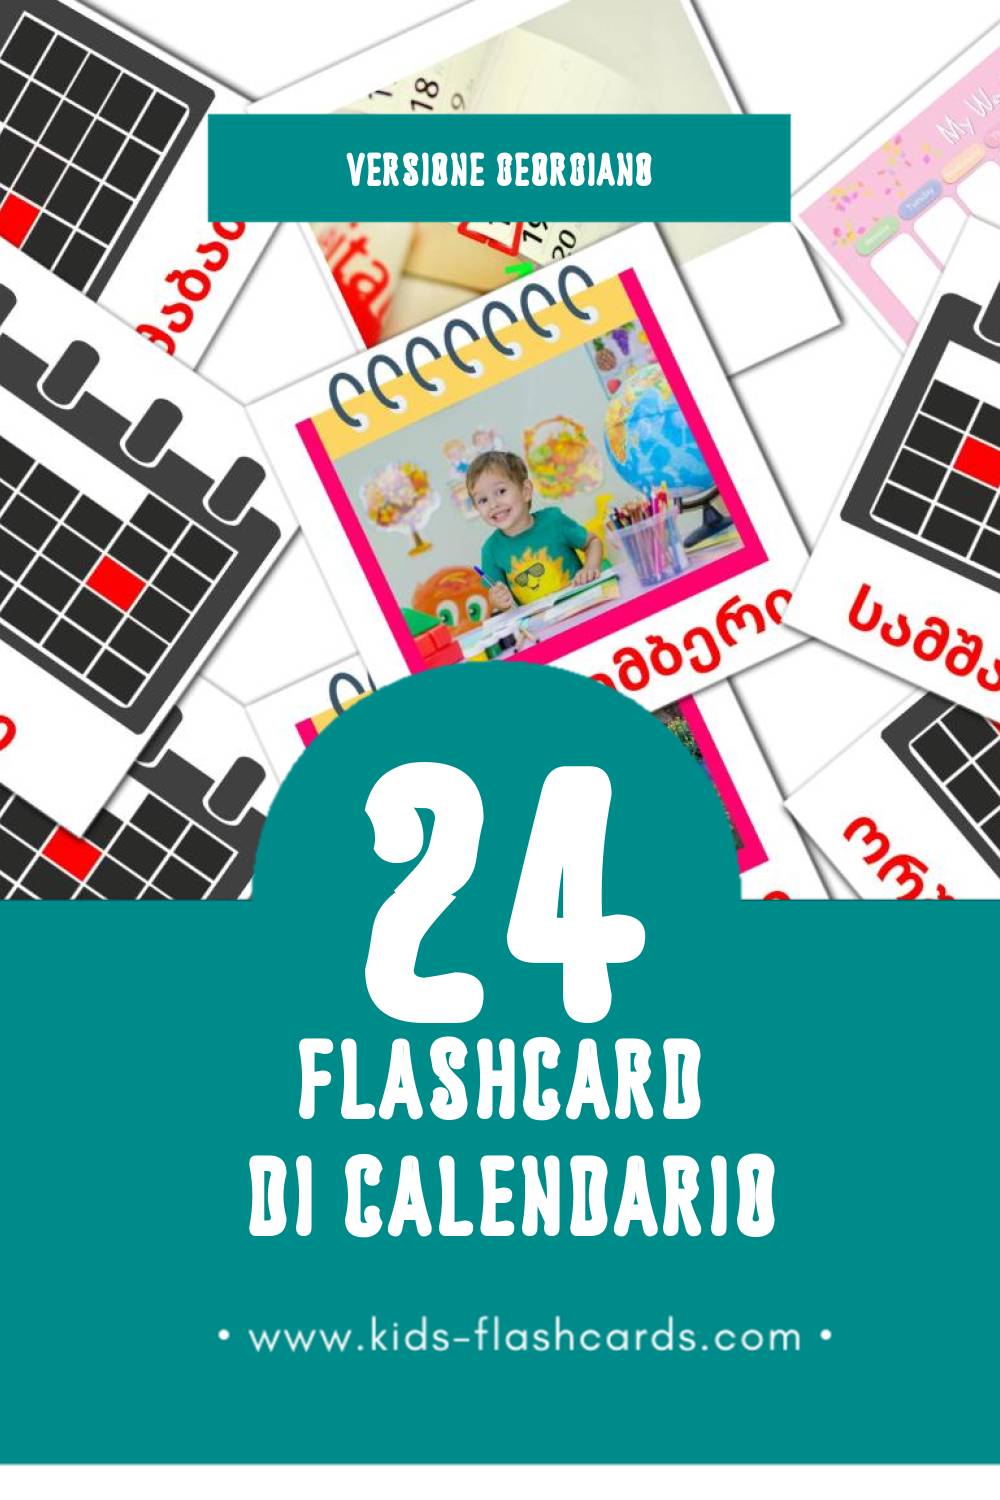 Schede visive sugli კალენდარი - Kalendar per bambini (24 schede in Georgiano)